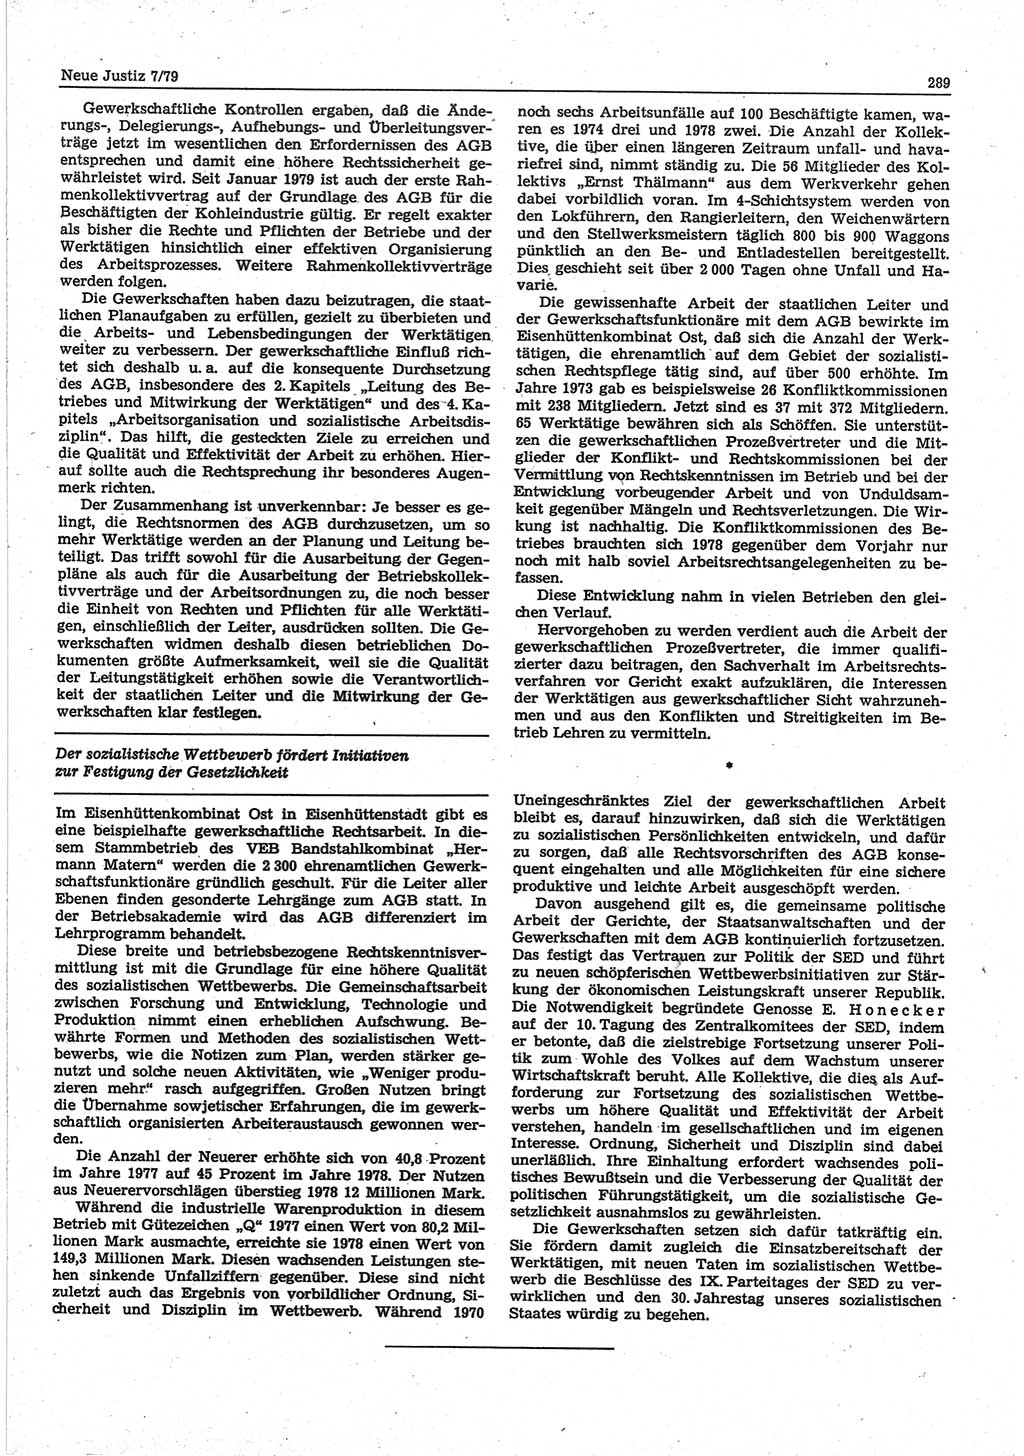 Neue Justiz (NJ), Zeitschrift für sozialistisches Recht und Gesetzlichkeit [Deutsche Demokratische Republik (DDR)], 33. Jahrgang 1979, Seite 289 (NJ DDR 1979, S. 289)